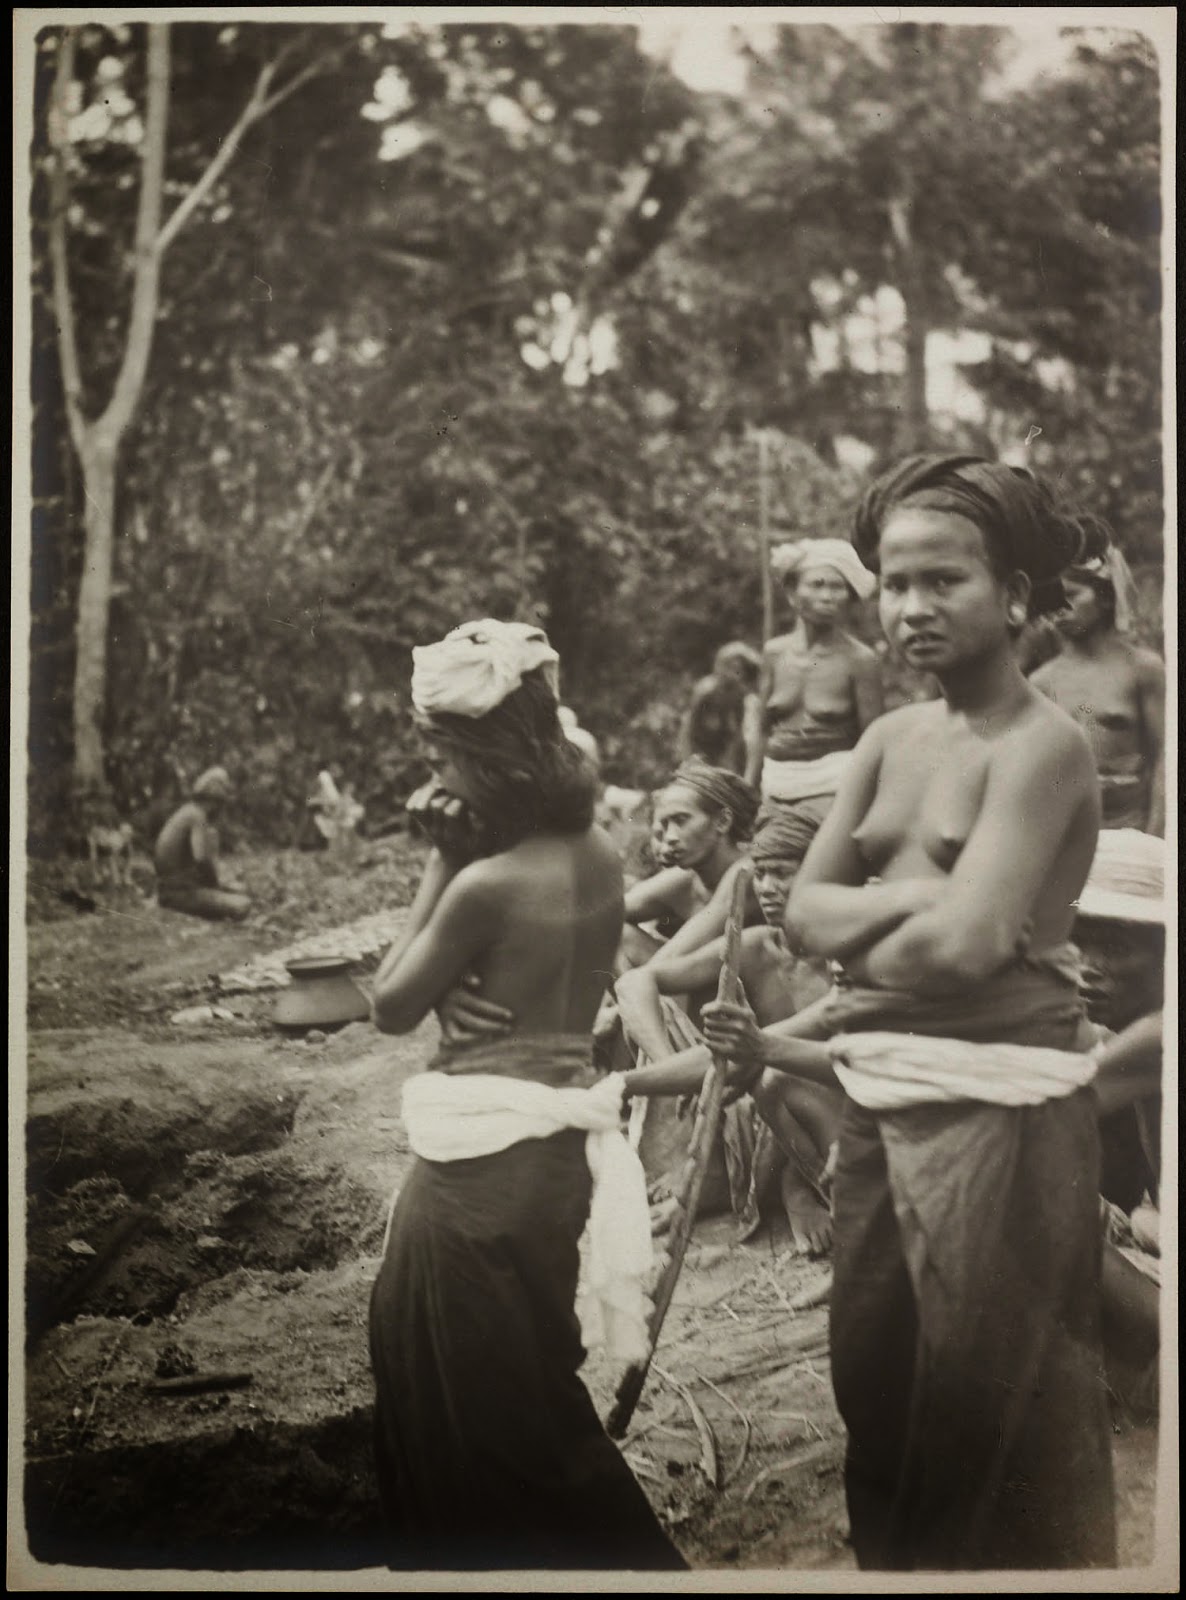 kumpulan-foto-gadis-bali-tempoe-doeloe-telanjang-dada-tahun-1910-1930-balinese-topless-girls-vintage-photography-25